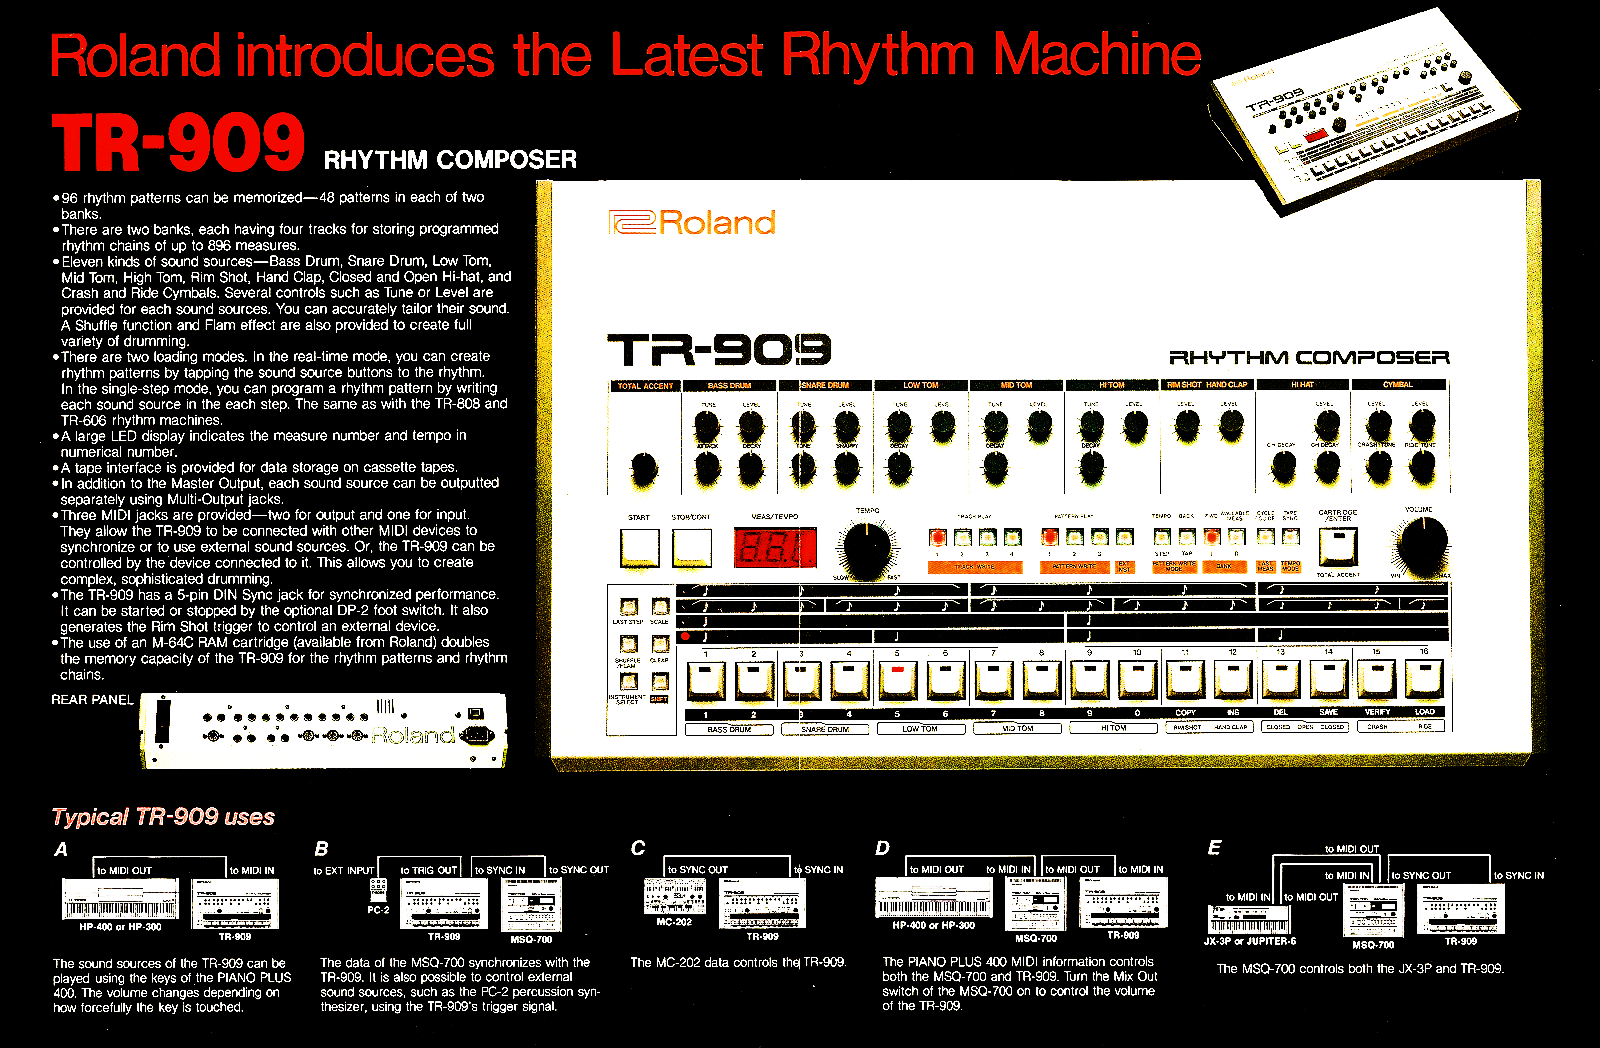 Así era el anuncio original en prensa de Roland TR-909